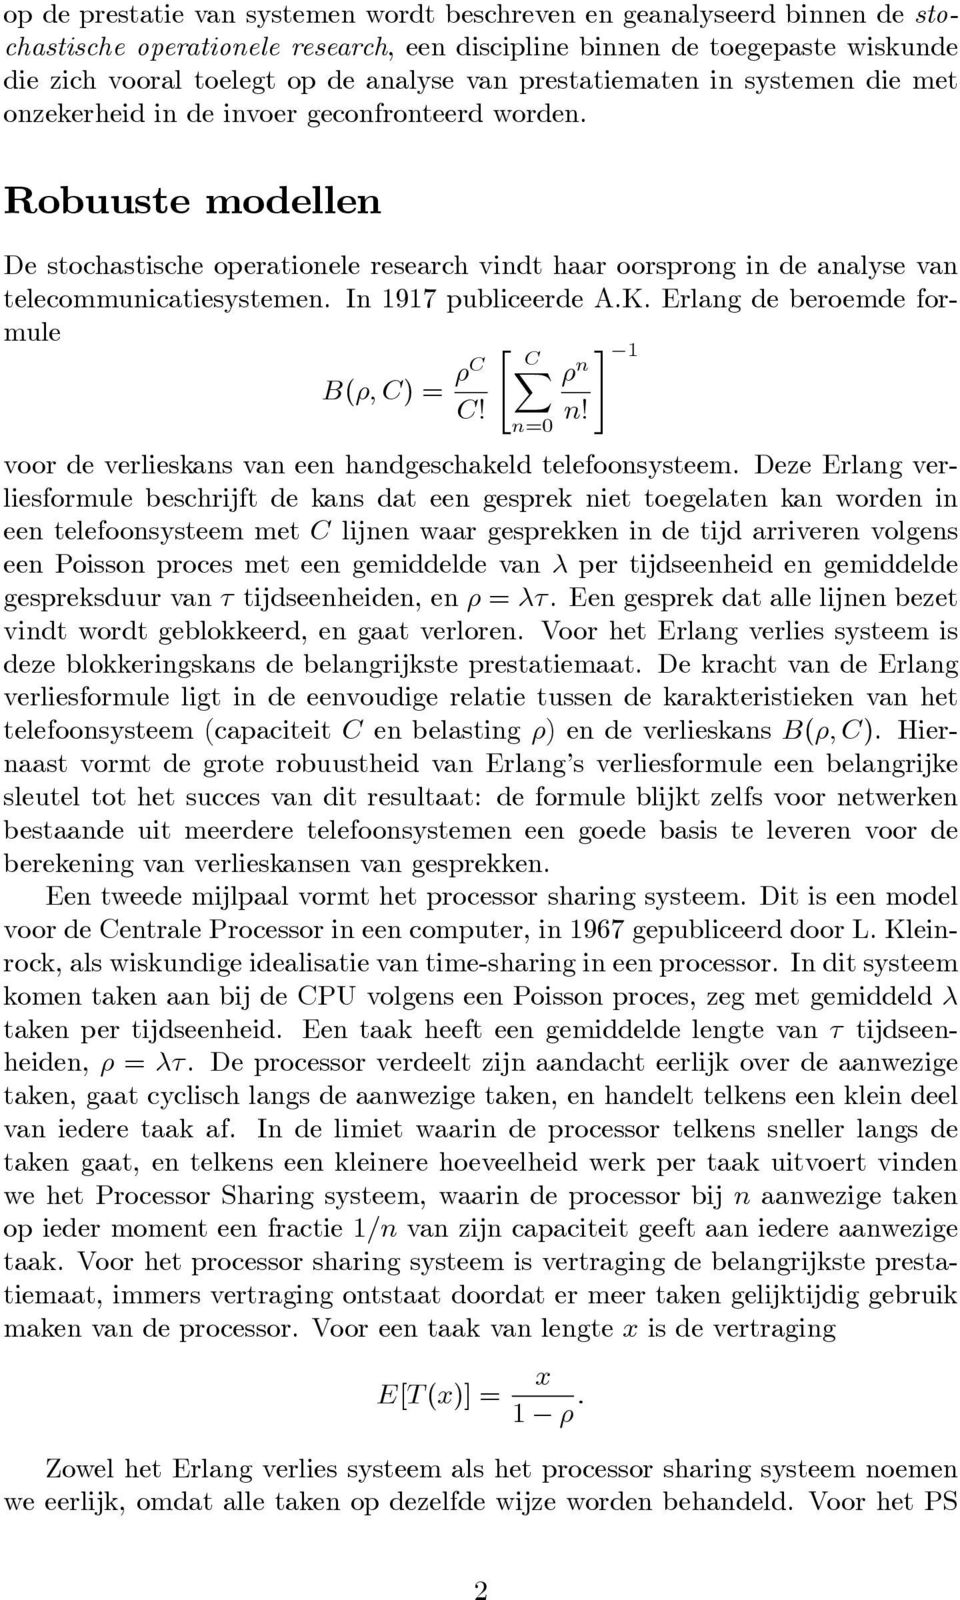 Robuuste modellen De stochastische operationele research vindt haar oorsprong in de analyse van telecommunicatiesystemen. In 1917 publiceerde A.K. Erlang de beroemde formule " B(; C) = C X C C!